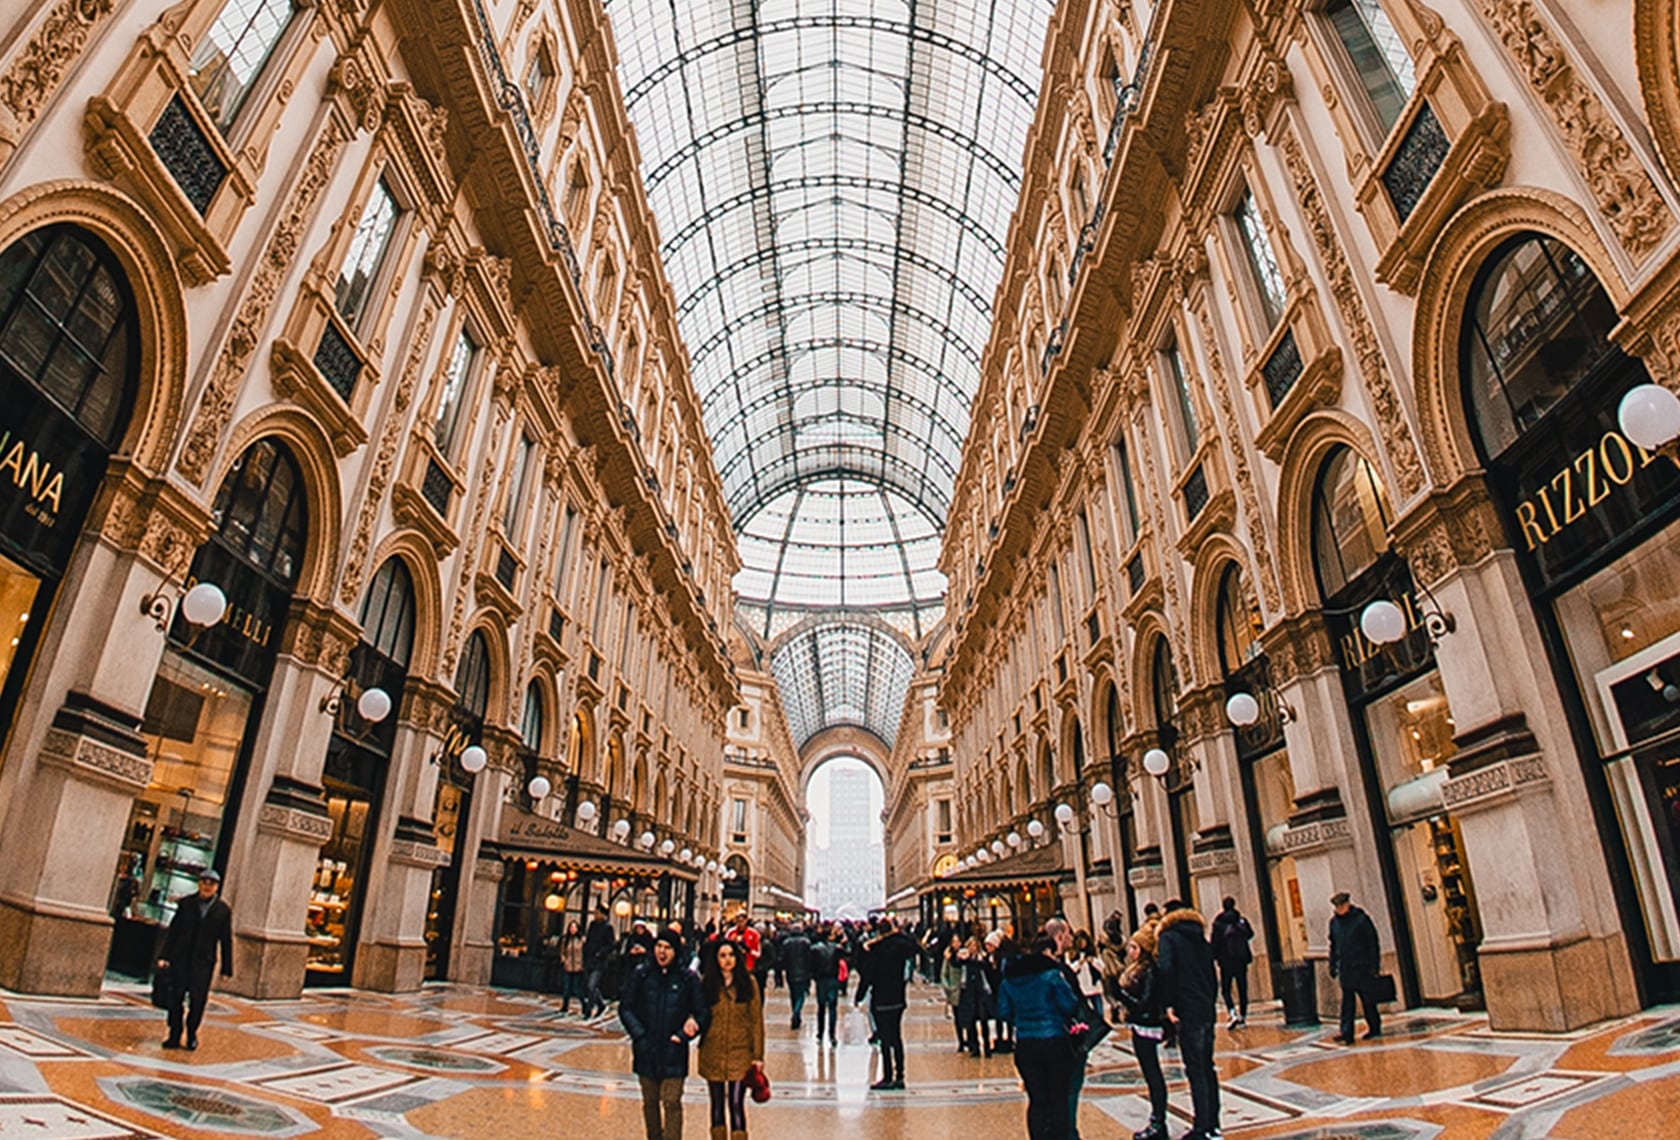 ミラノのファッションやブランド、買い物スポットについて説明する記事中のイメージ画像です。モールのような大きな建物の中です。